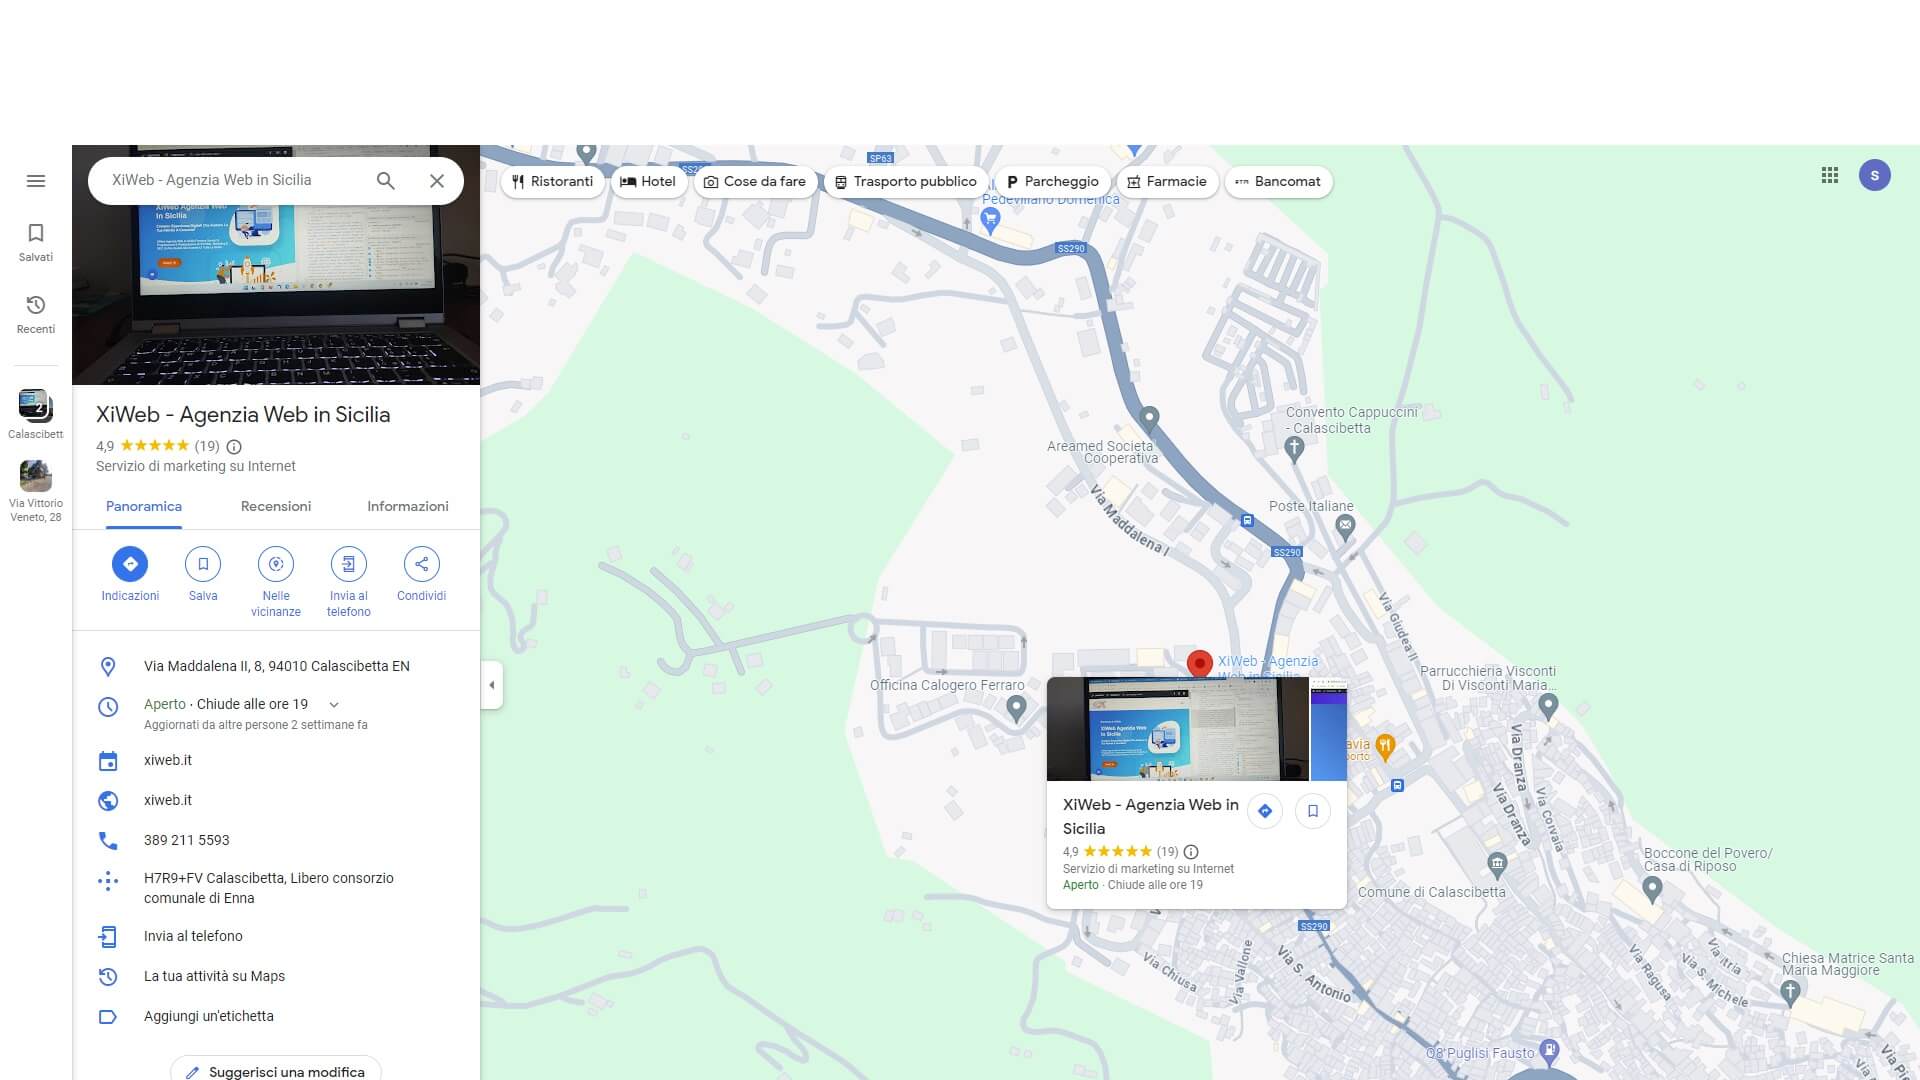 Usare Google Maps a supporto della strategia SEO